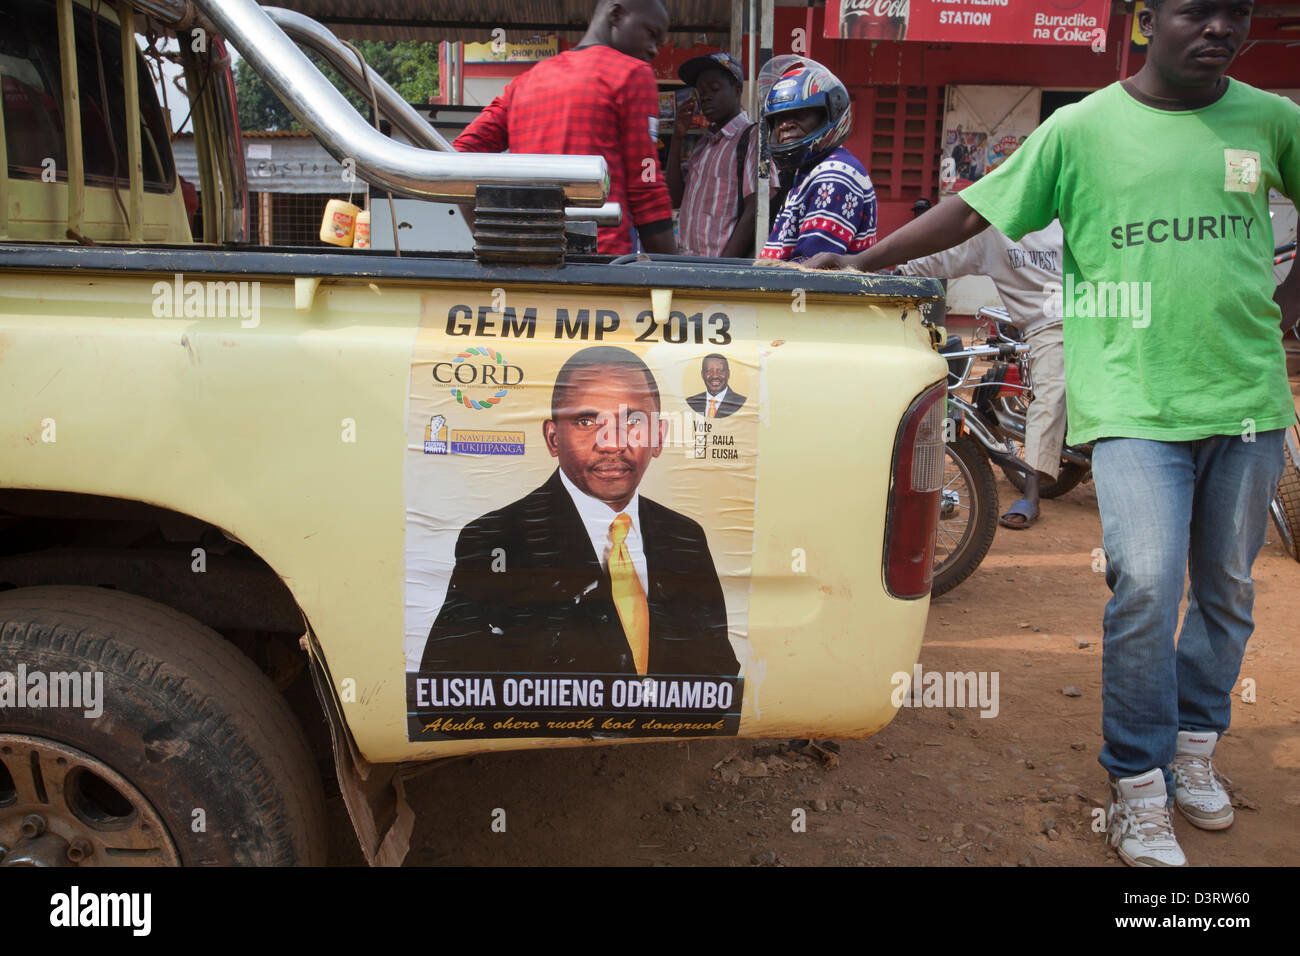 Manifesto politico sul lato della vettura di campagna per la corda MP candidato Eliseo Ochieng Odhiambo, Yala, nella provincia di Nyanza, Kenya, Feb 2013. Foto Stock